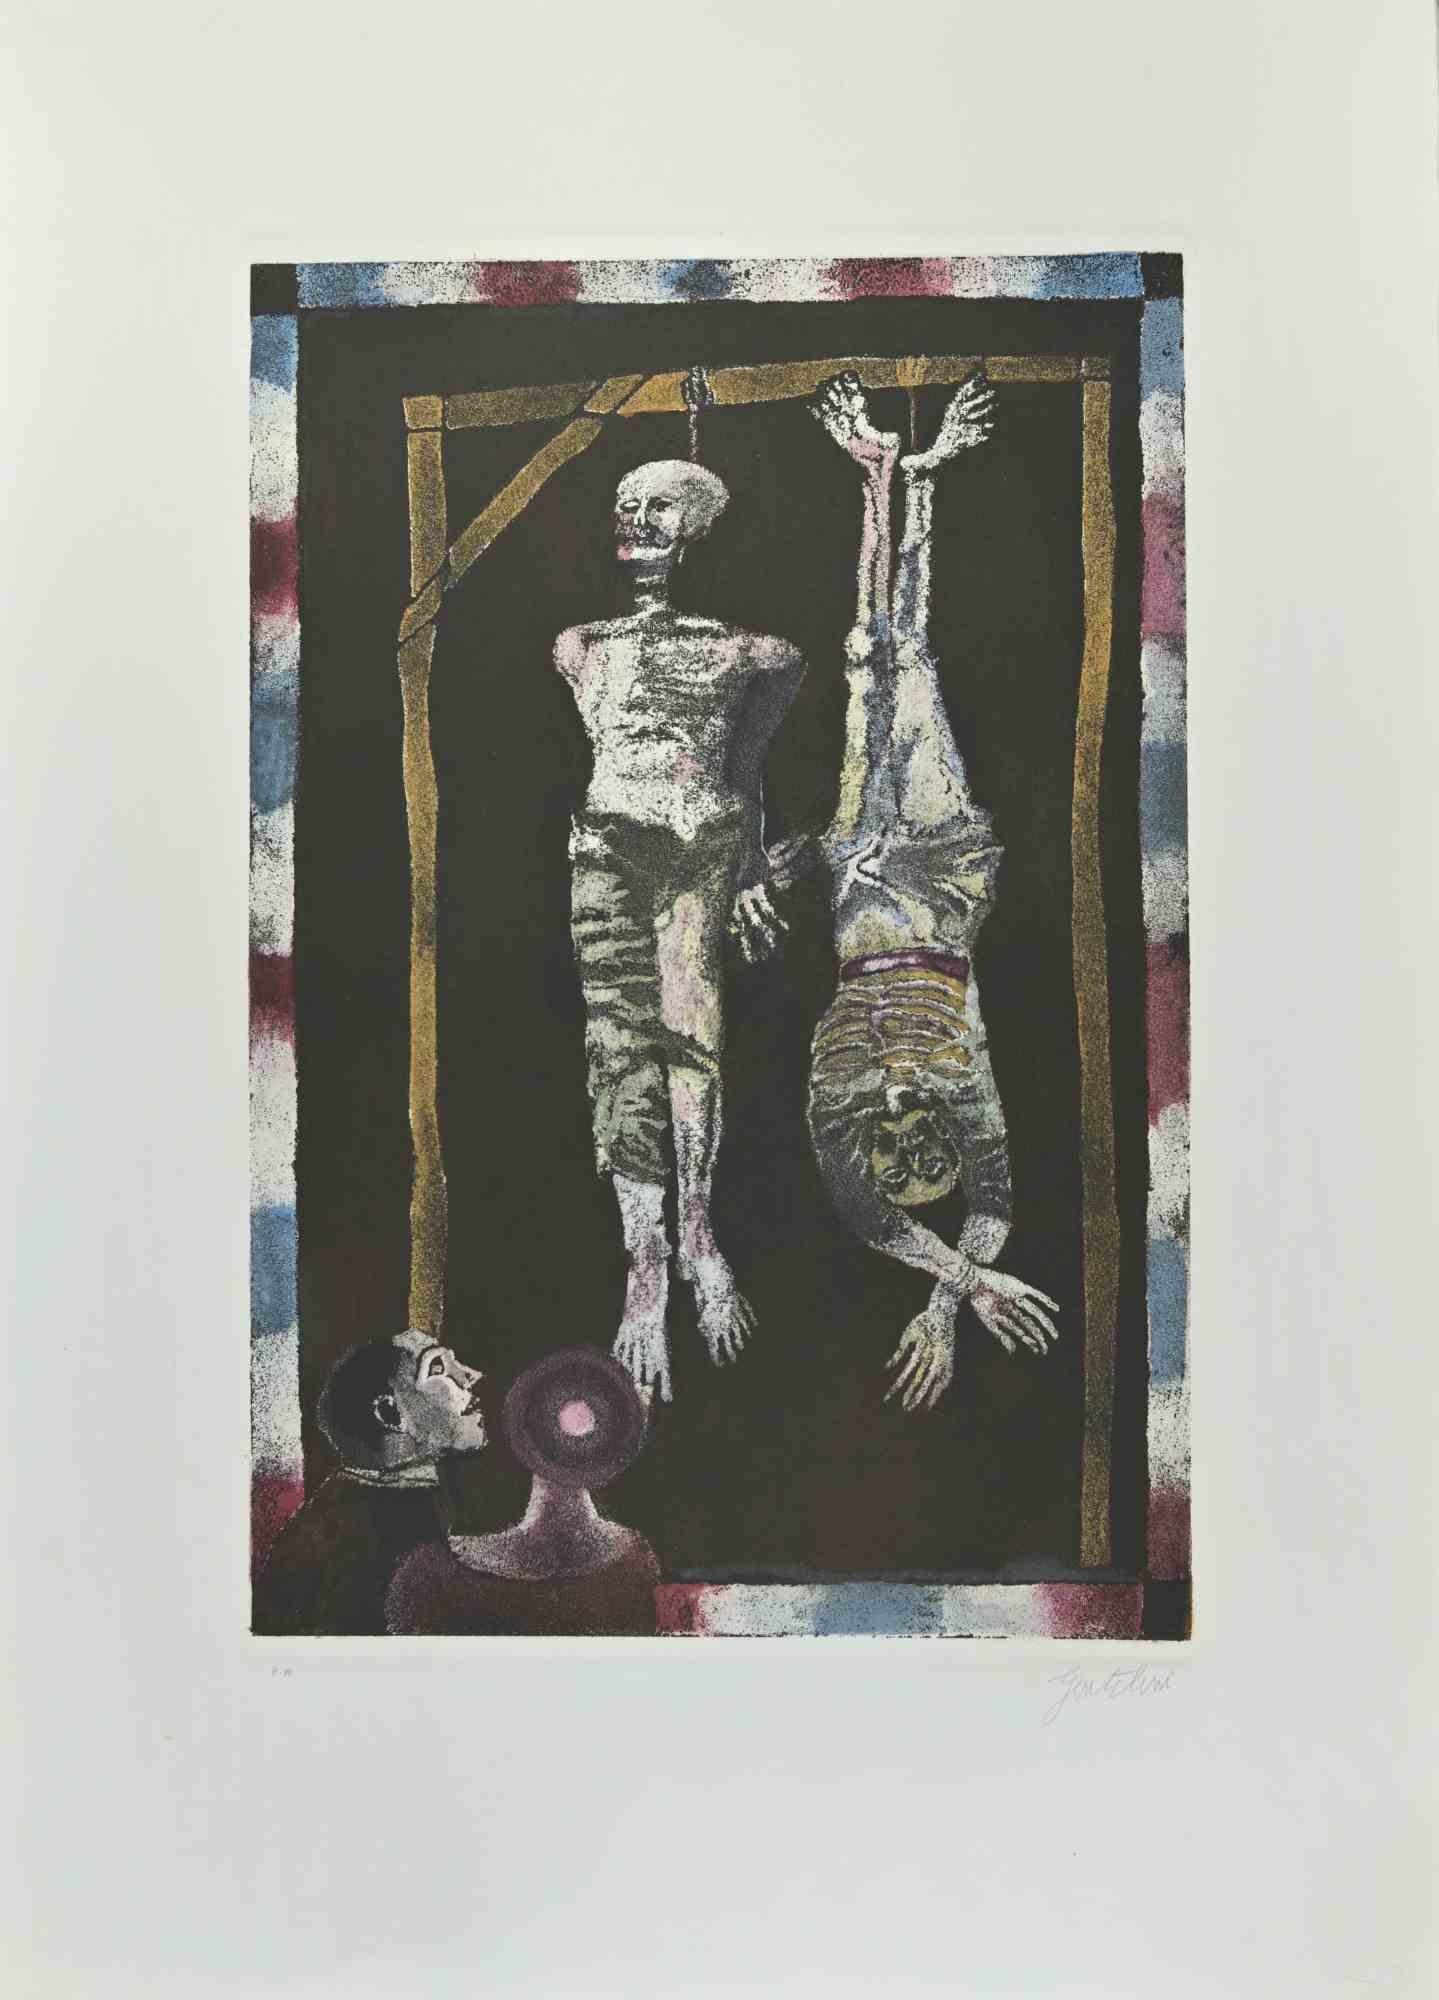 Der Gehängte ist eine Radierung und Aquatinta von Franco Gentilini (italienischer Maler, 1909-1981) aus den 1970er Jahren.

Aus der Serie "Die Tarots" Trockenstempel von Il Cigno Stamperia d'Arte. 

Handsigniert mit Bleistift auf der unteren